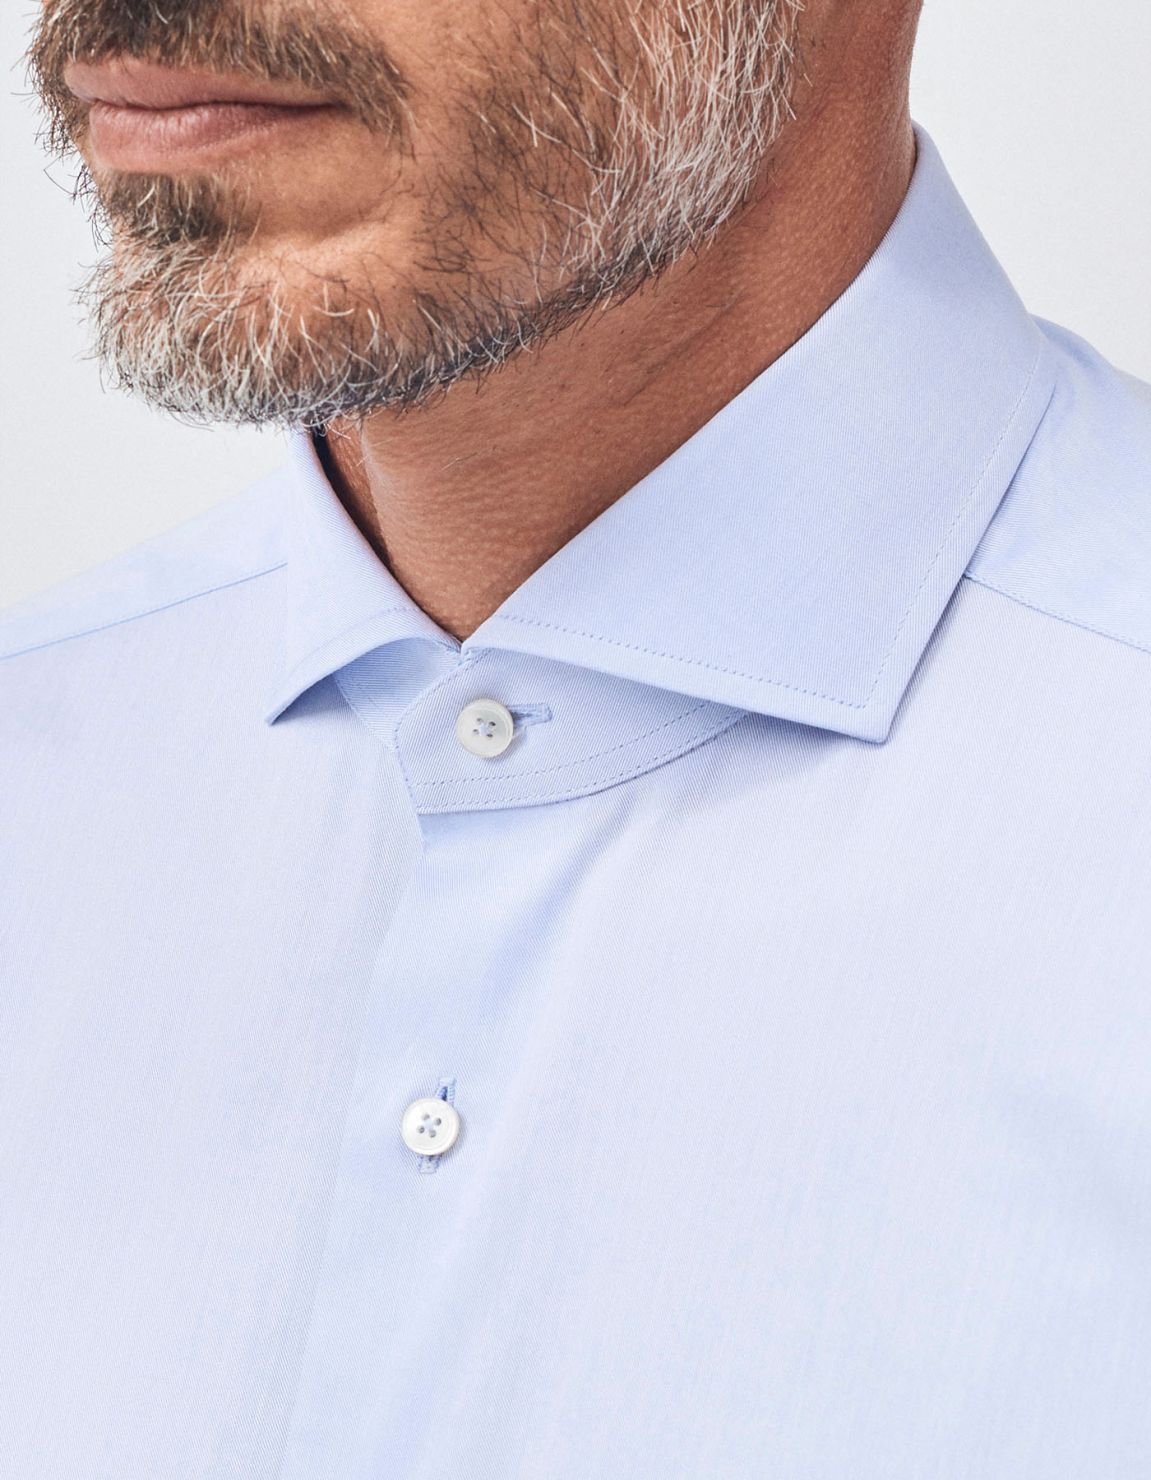 Shirt Collar small cutaway Light Blue Twill Slim Fit 3